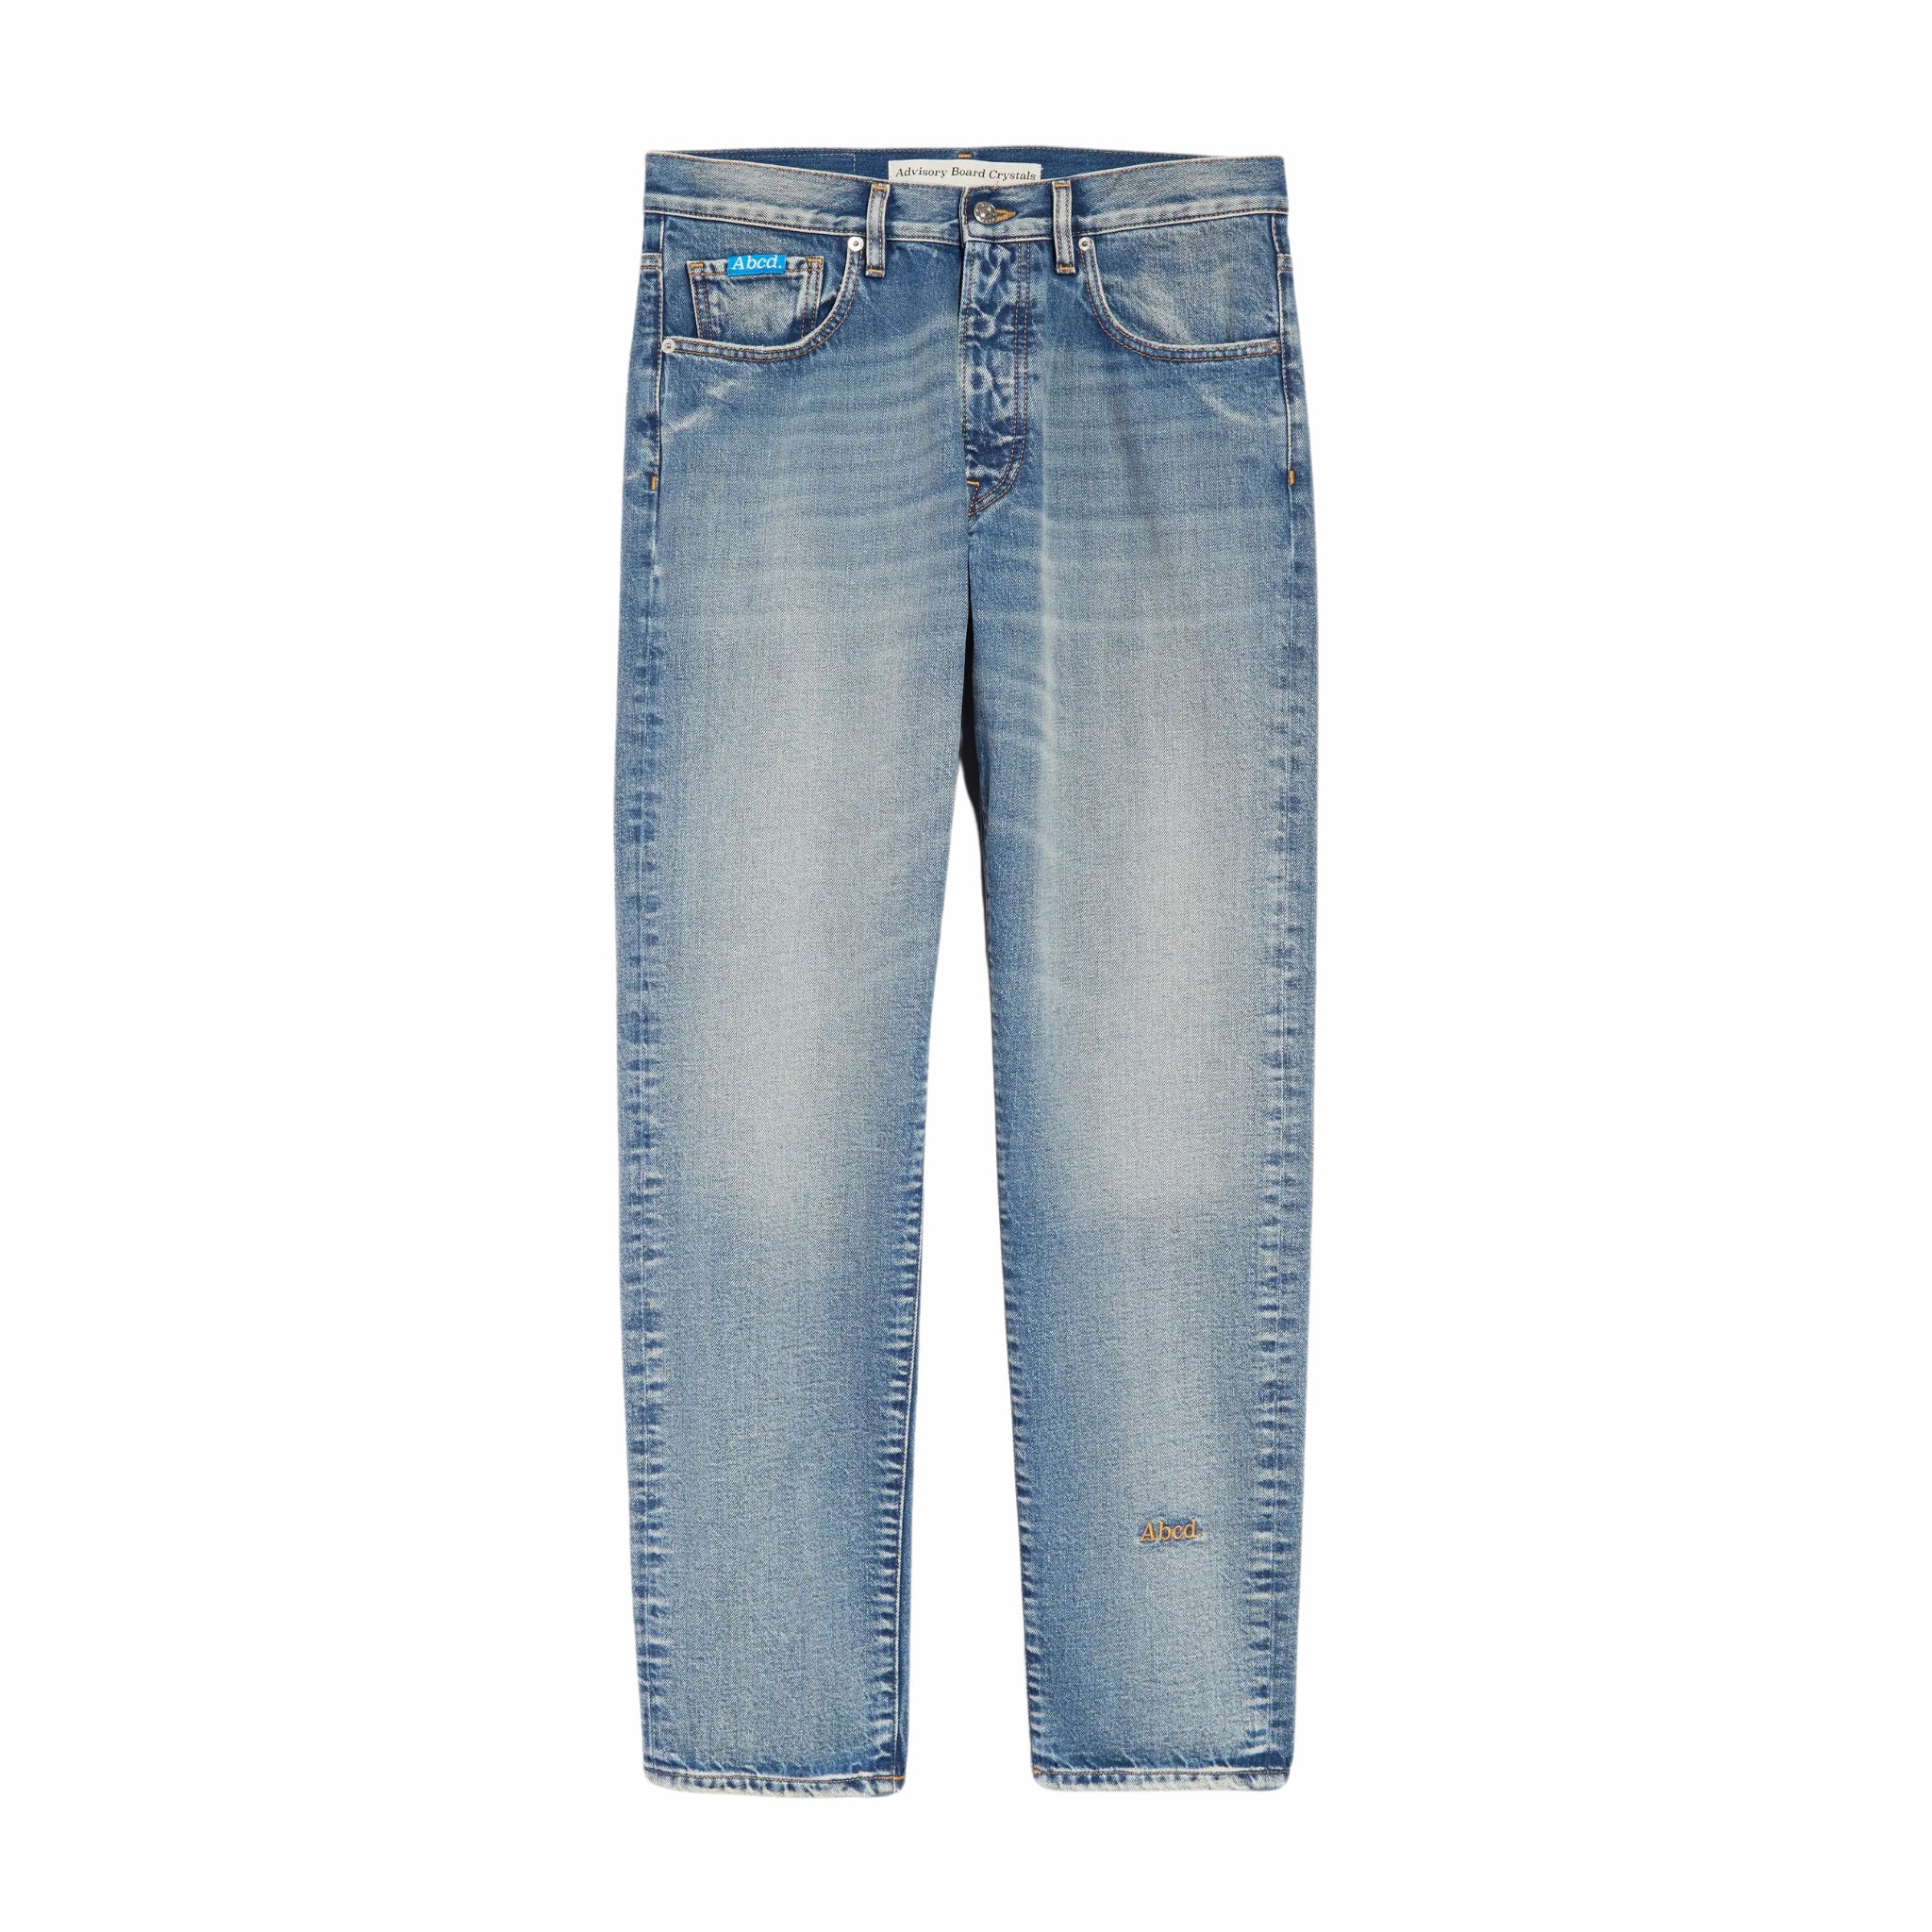 Cristalli del comitato consultivo, Abcd. Jeans dal taglio originale (blu super sbiadito)